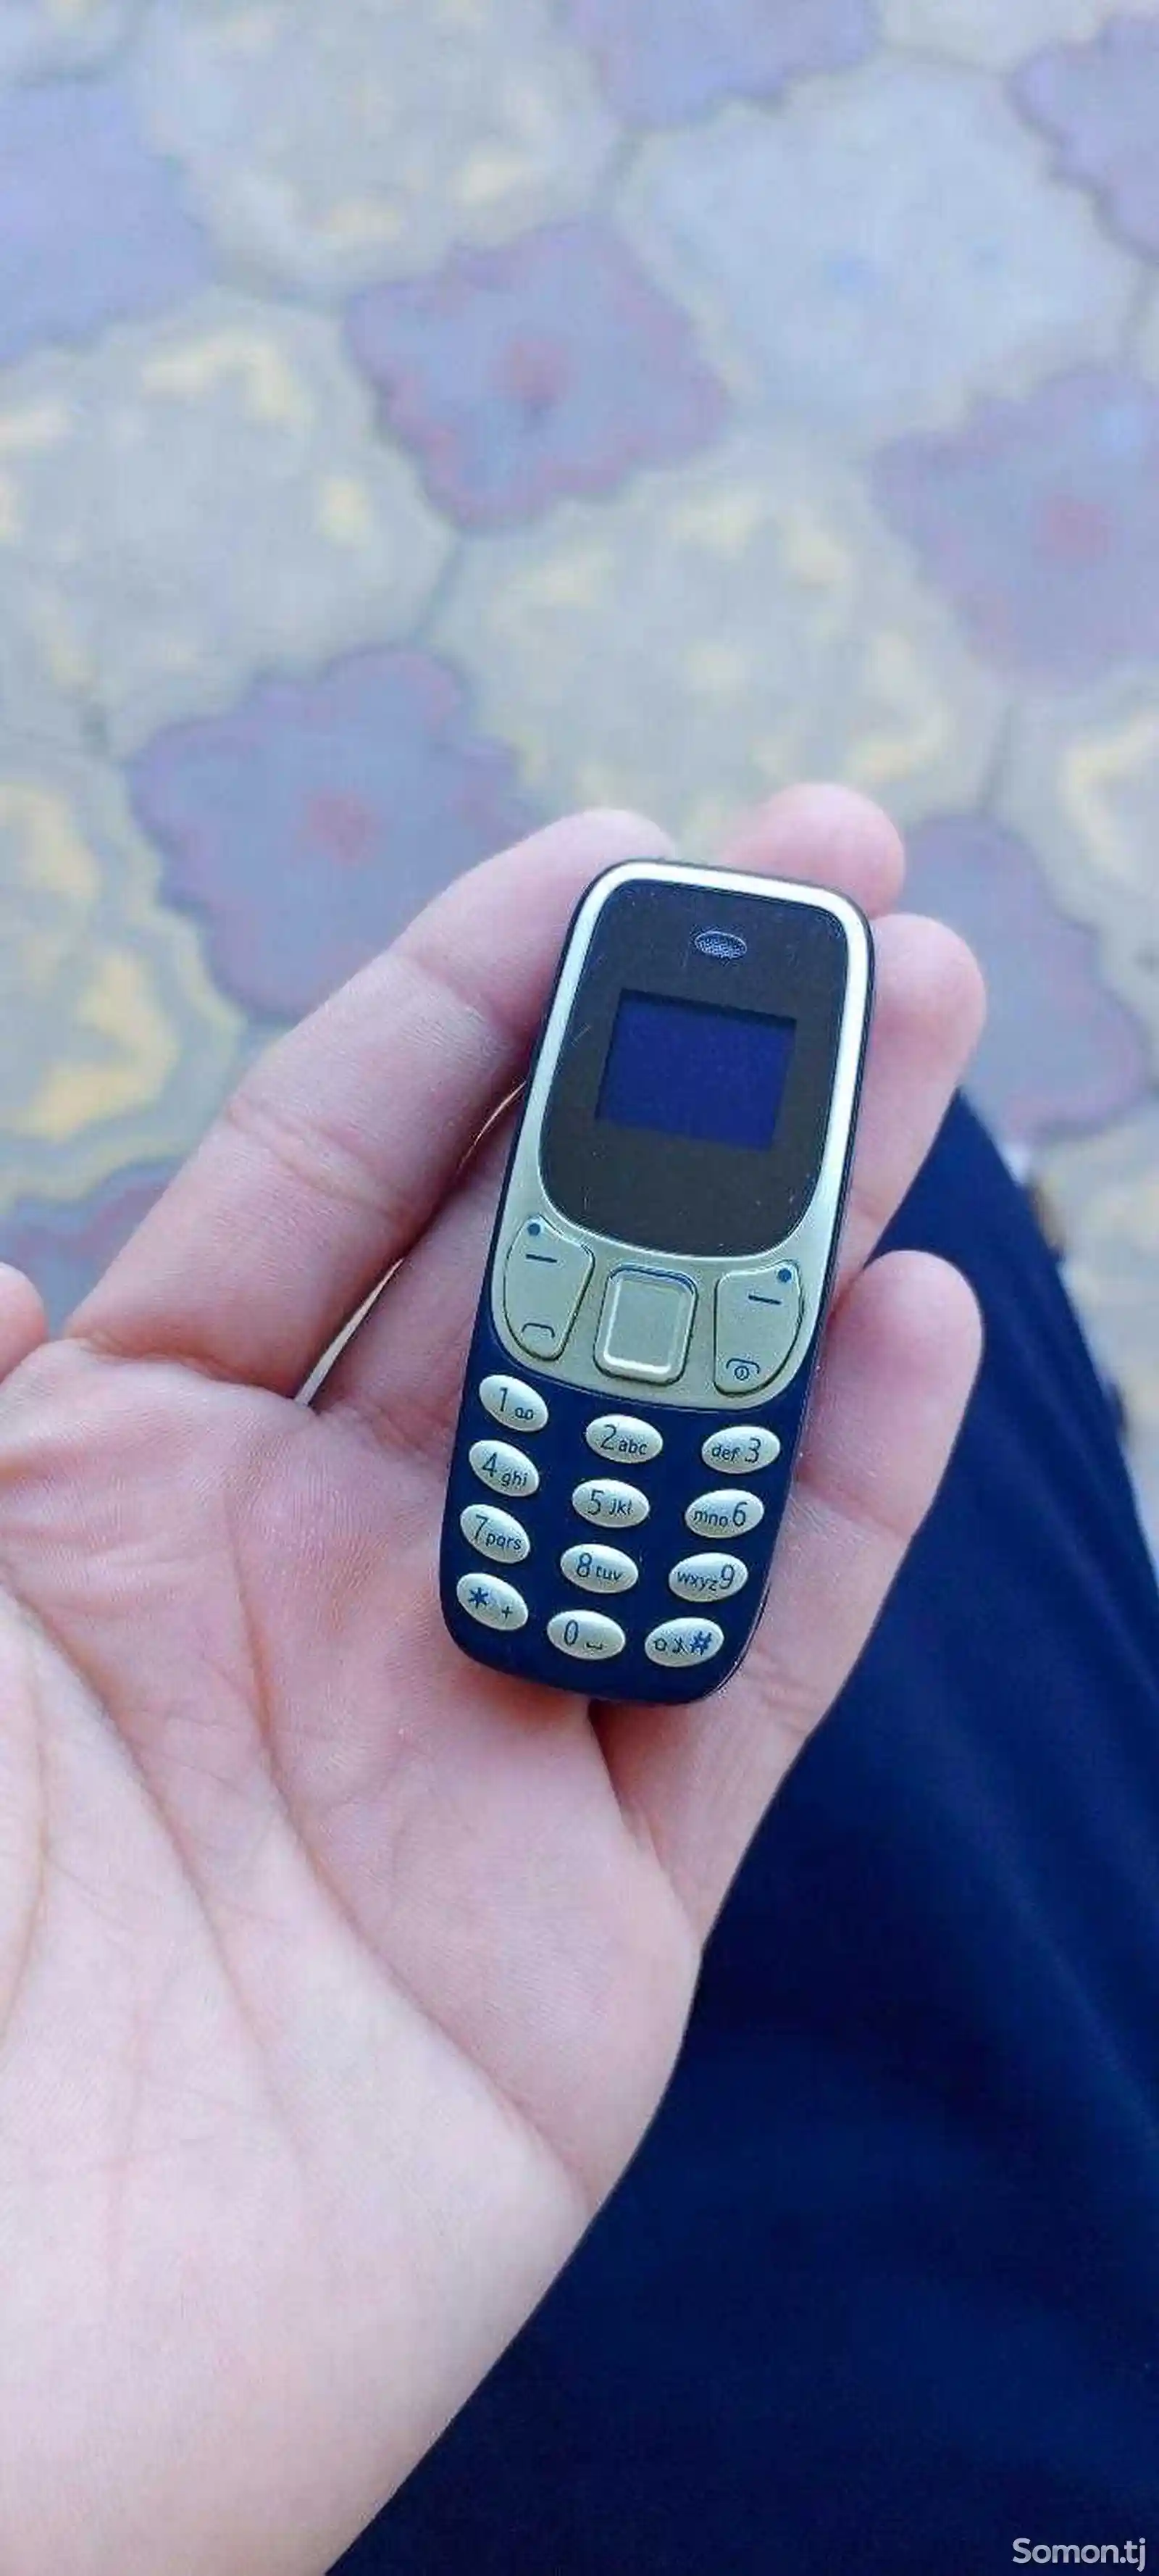 Nokia mini-1